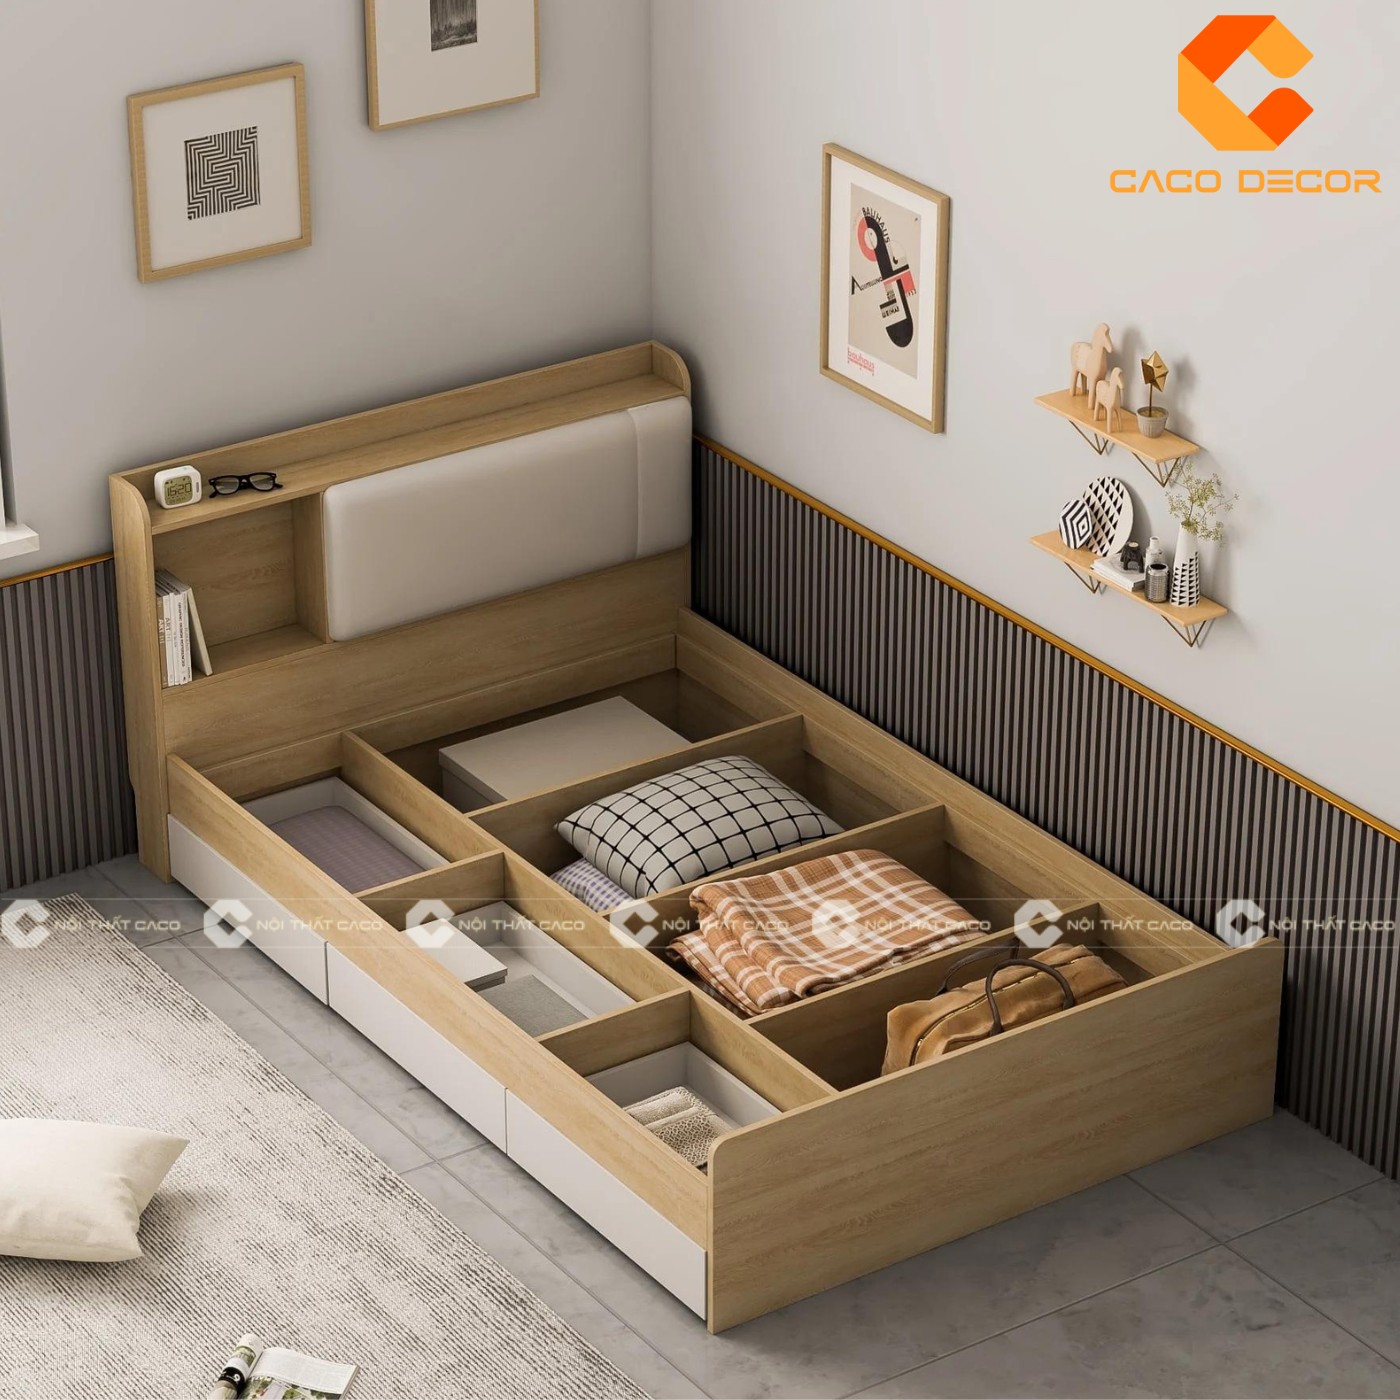 Giường ngủ gỗ công nghiệp đẹp, chất lượng với giá tốt nhất thị trường 7